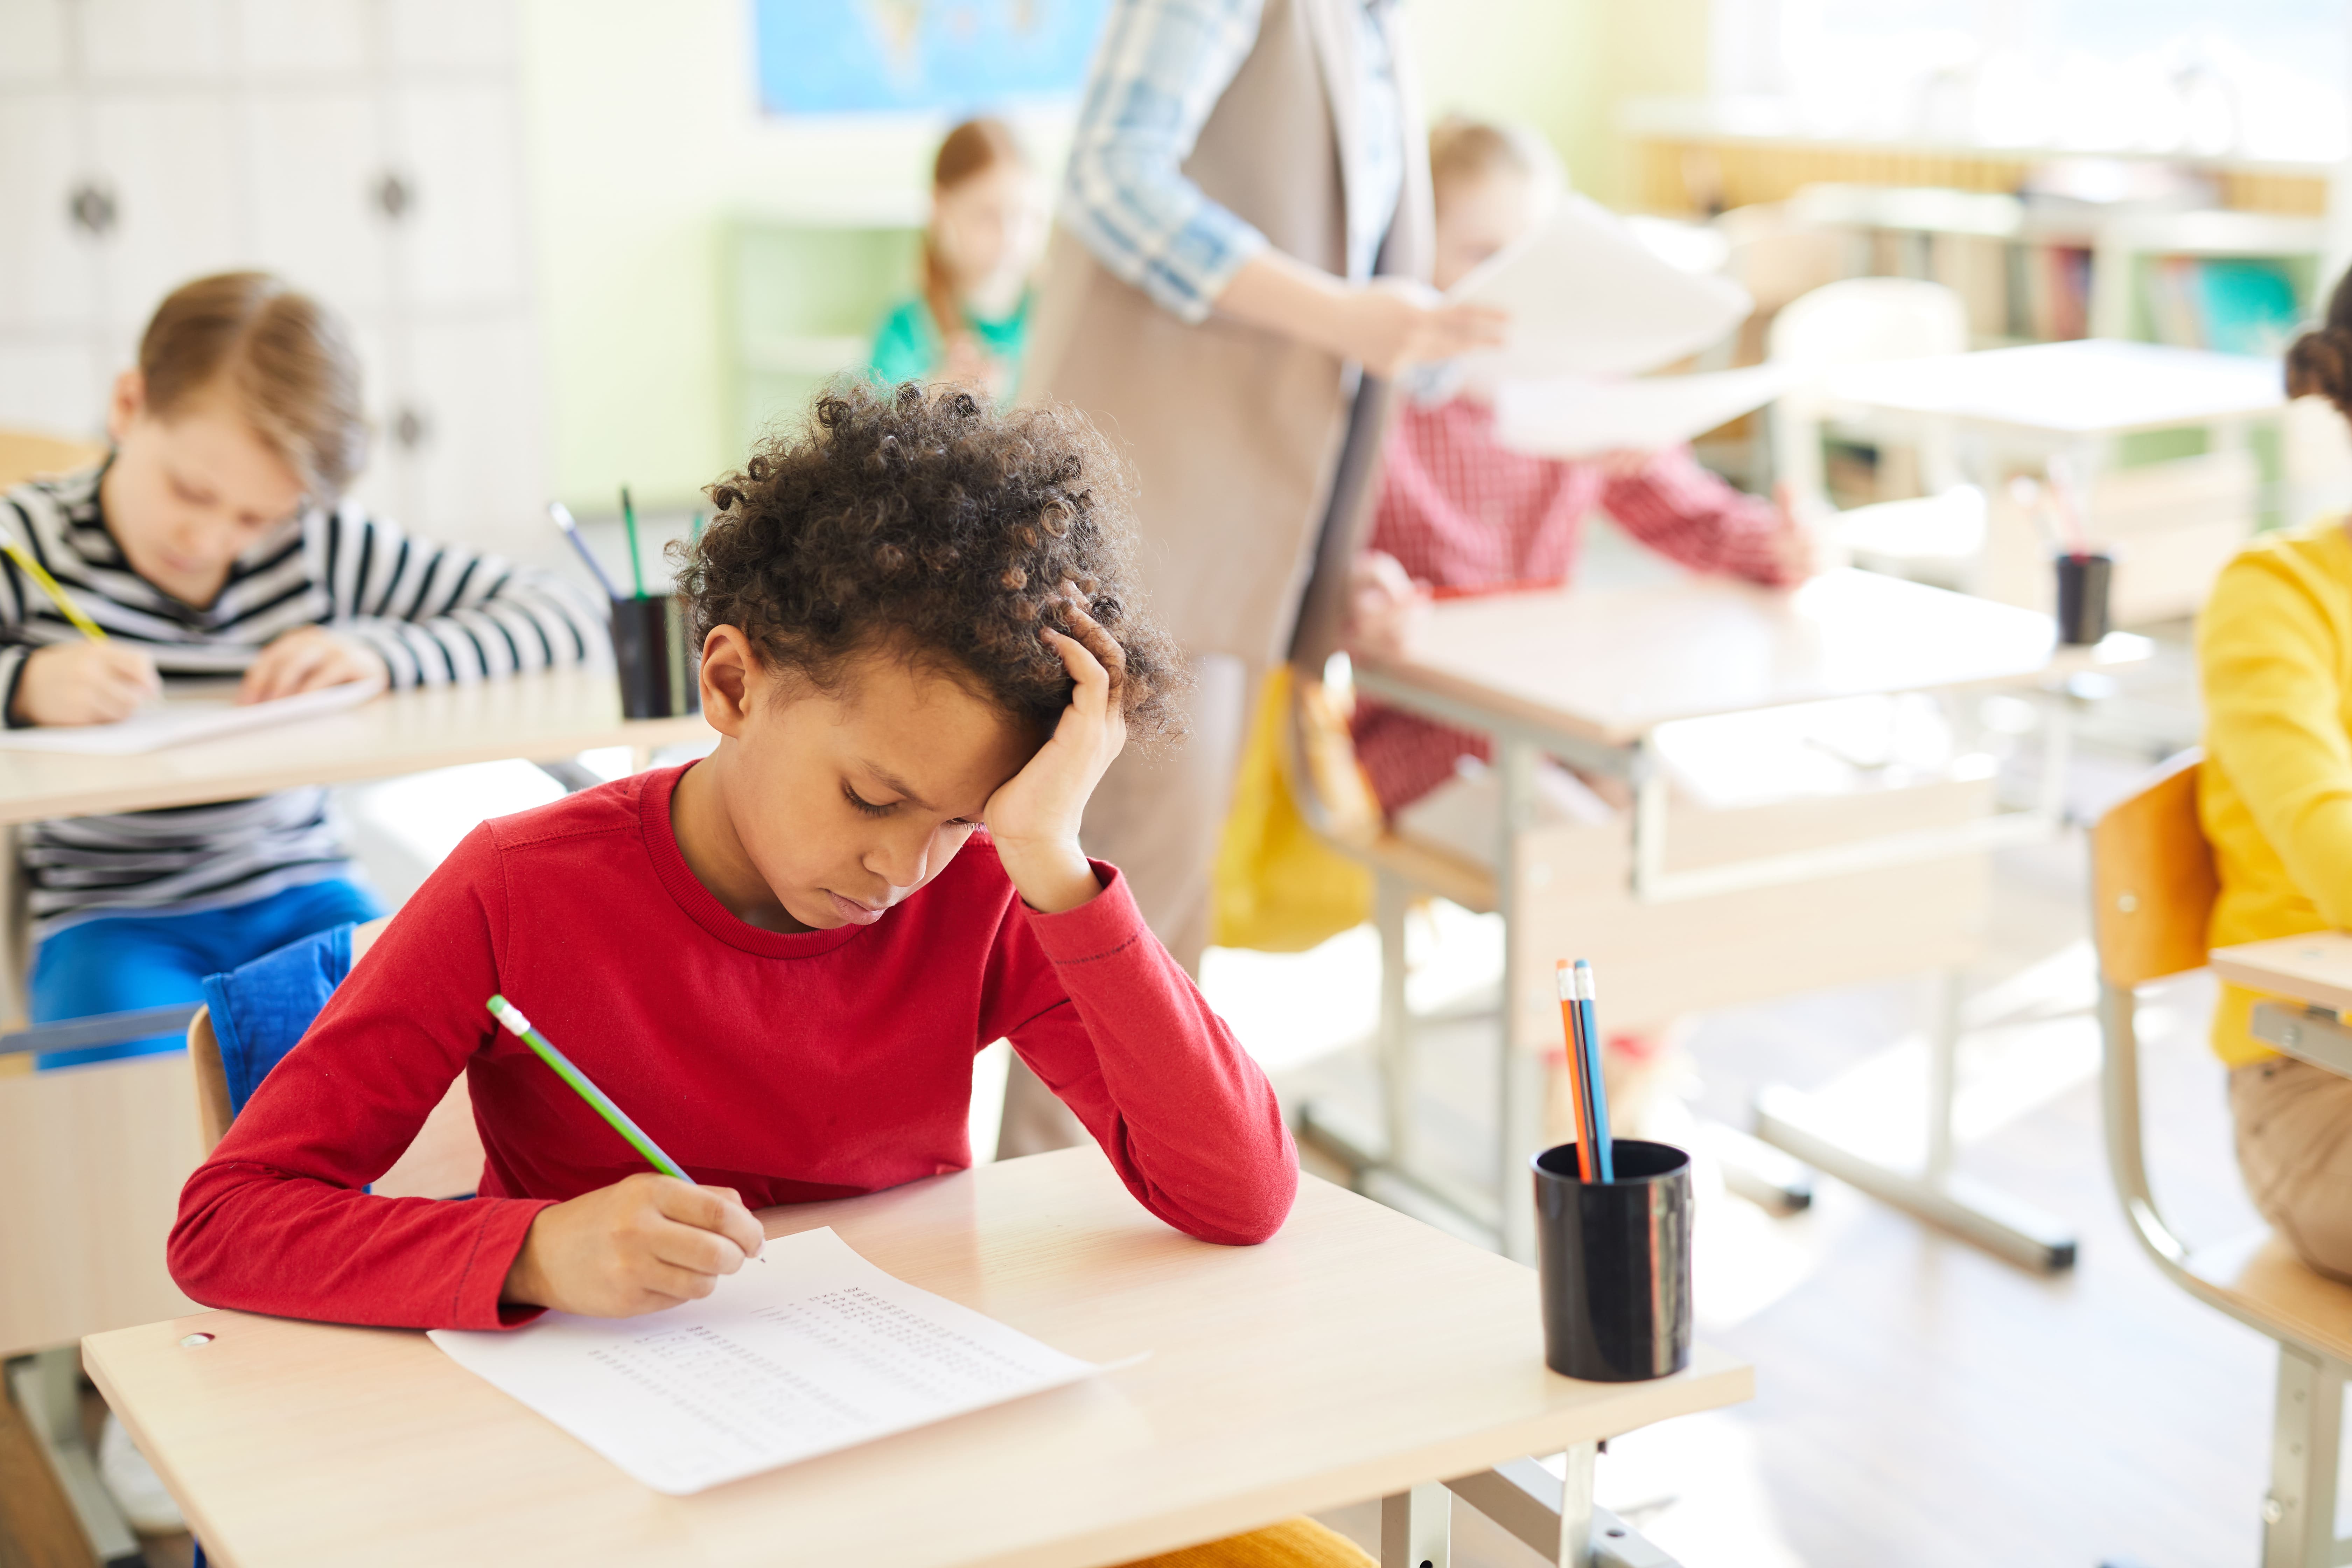 No ambiente escolar, diferentes fatores podem contribuir para que os alunos vivenciem níveis de estresse e ansiedade acima do normal. 